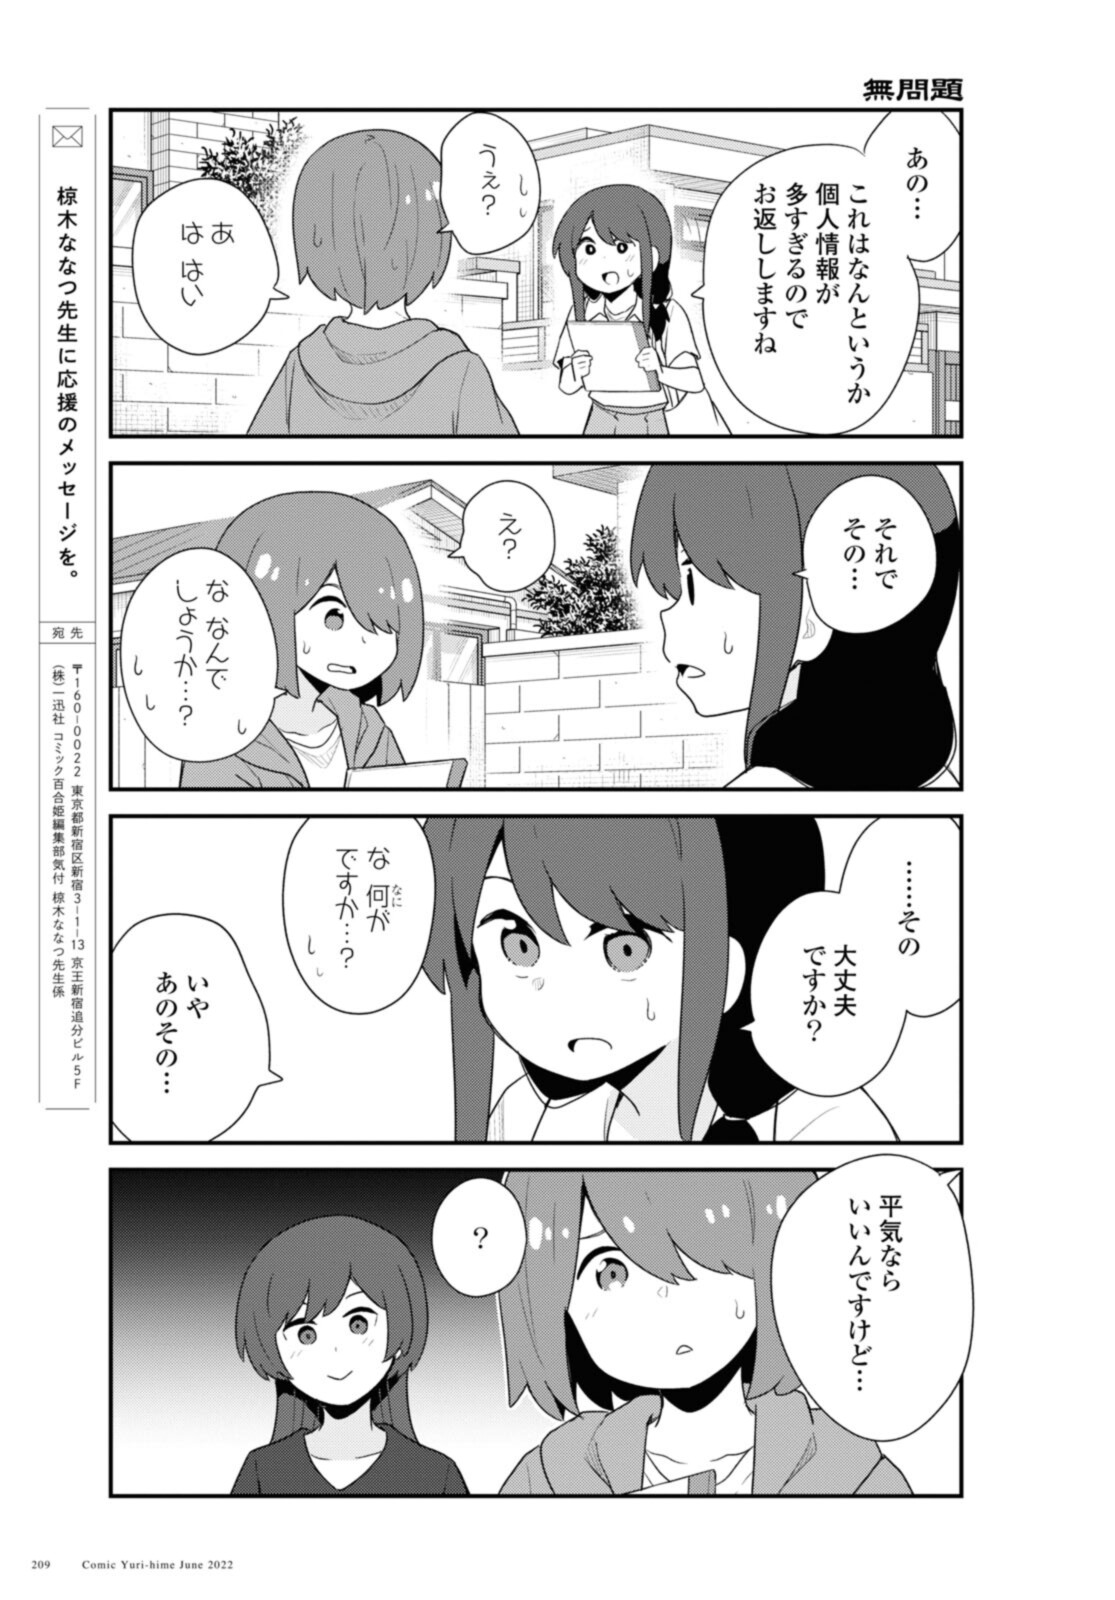 Watashi ni Tenshi ga Maiorita! - Chapter 96 - Page 15